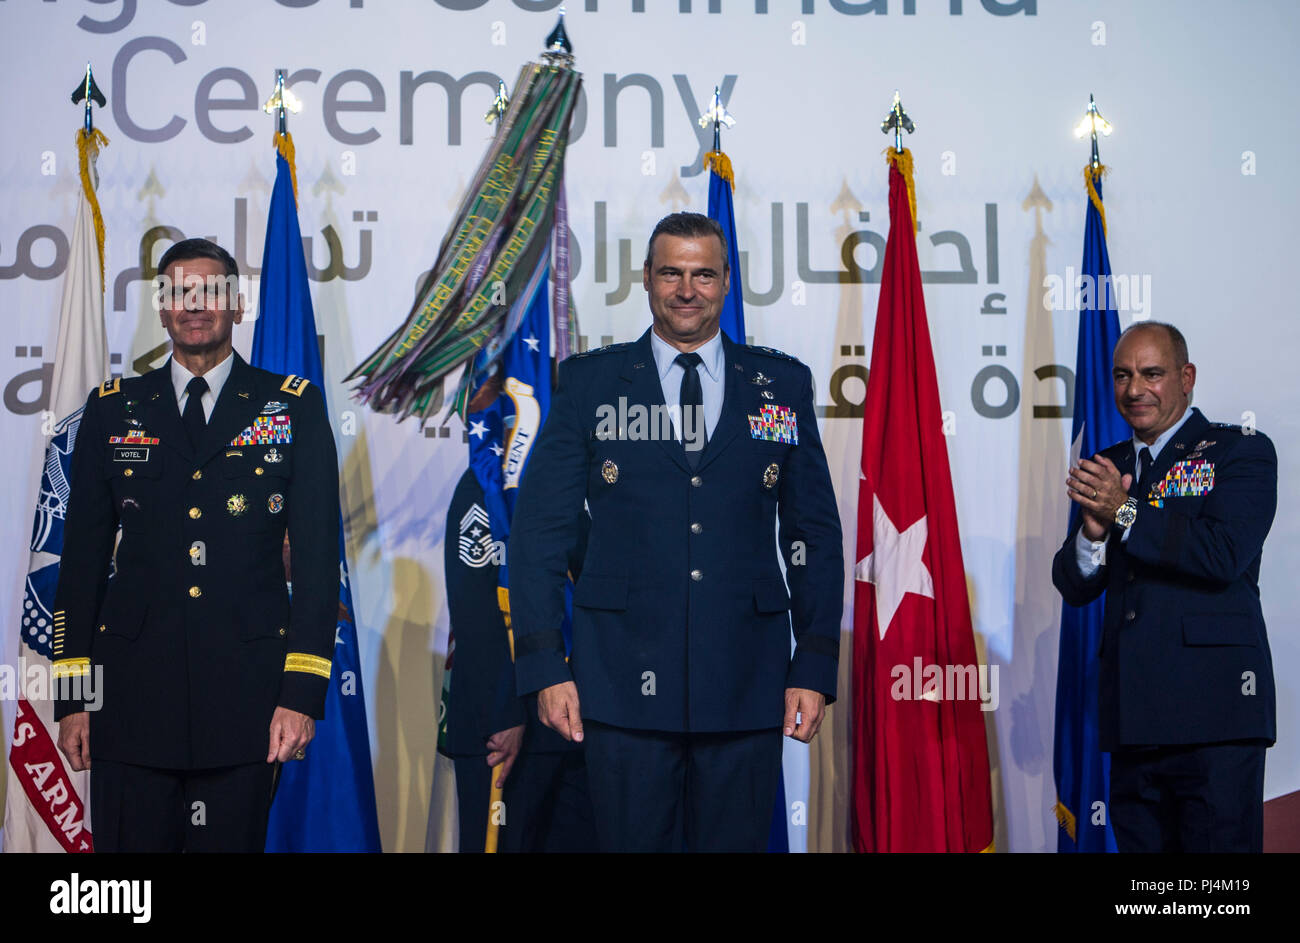 Gen. de EE.UU. Joseph L. Votel, Comandante del Comando Central (CENTCOM), se encuentra con el Teniente Coronel de la Fuerza Aérea de EE.UU. Joseph T. Guastella Jr., Comandante del Comando Central de las Fuerzas Aéreas estadounidenses (AFCENT) y la Fuerza Aérea, el Teniente General Jeffrey L. Harrigian AFCENT, comandante saliente, durante una ceremonia de cambio de mando en la base aérea de Al Udeid, Qatar, el 30 de agosto, 2018. Guastella entraron a la Fuerza Aérea en 1987 como un egresado de la Academia de la Fuerza Aérea de los EE.UU. Él ha volado el F-16 Falcon y combate A-10 Thunderbolt II, sirvió como comandante del ala del ala expedicionaria aérea 455a en el aeródromo de Bagram, Afganistán ha tenido m Foto de stock